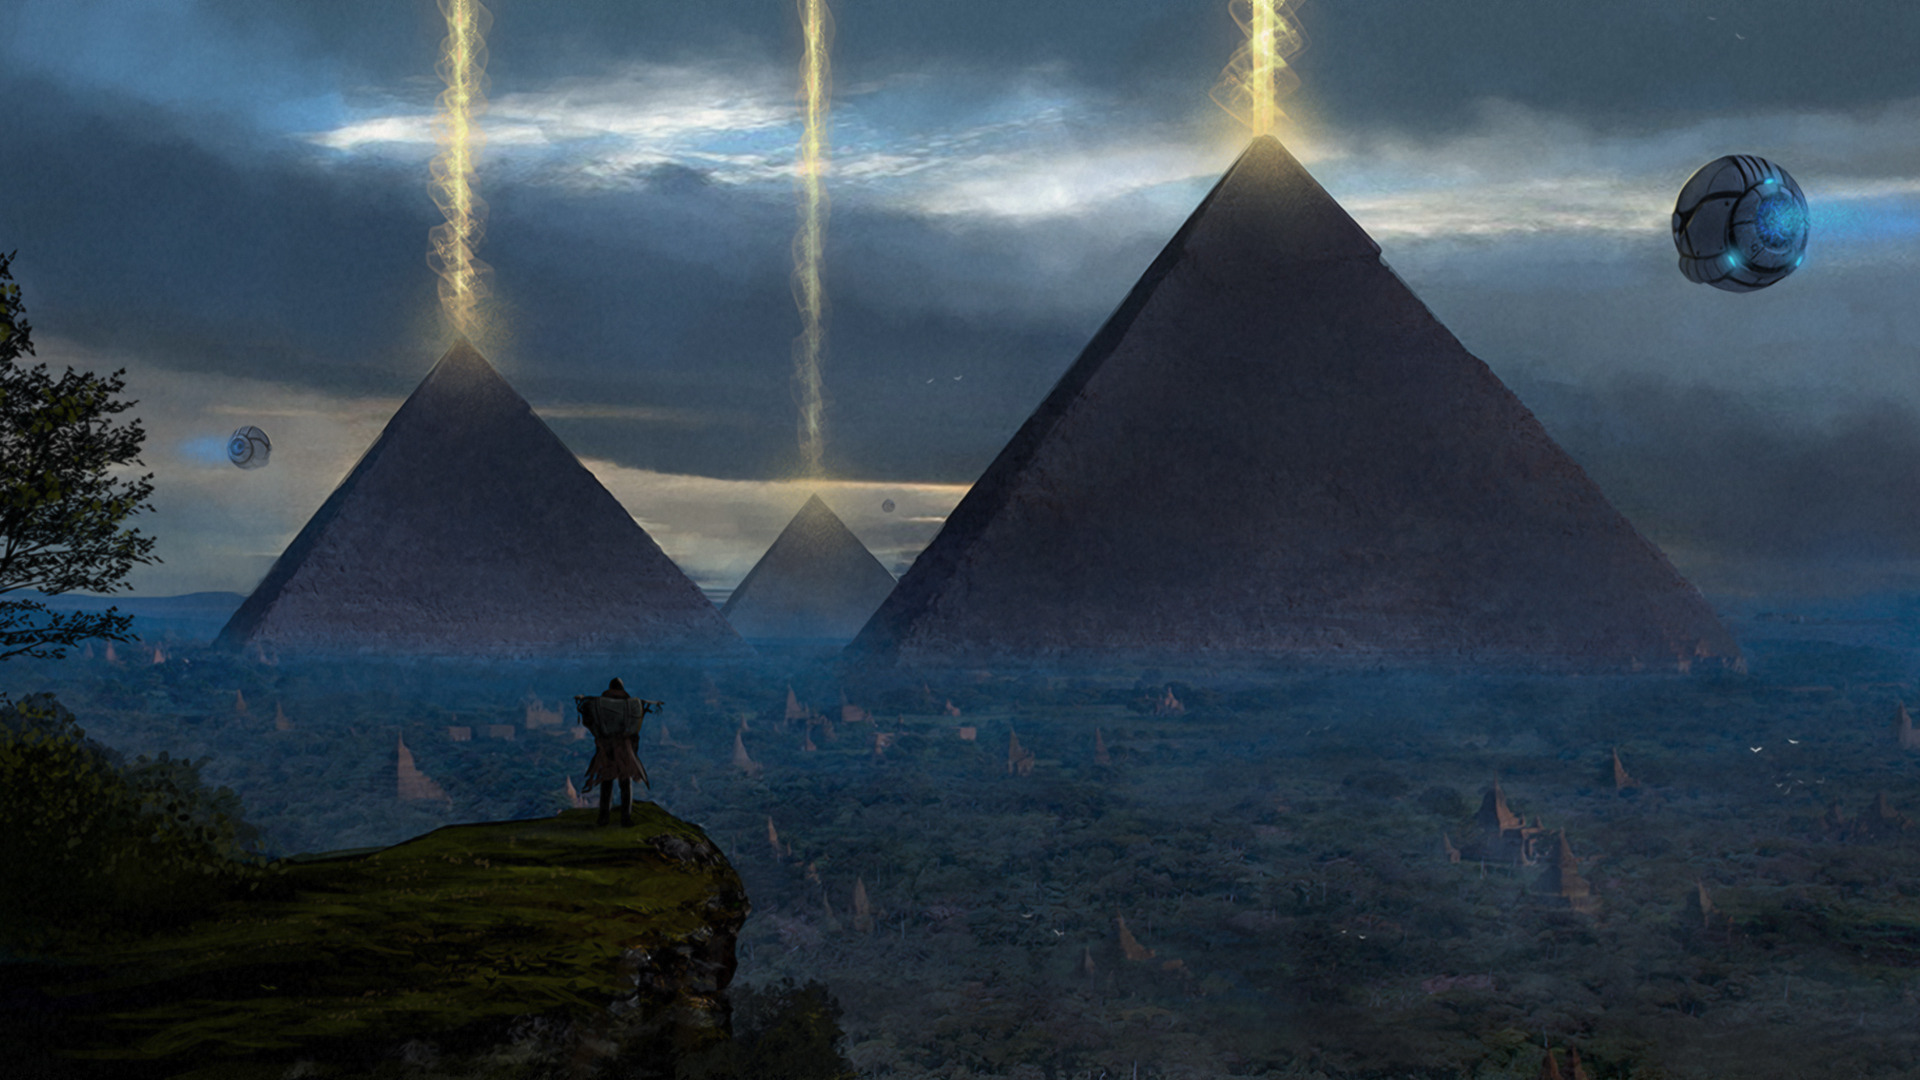 Ancient pyramids. Египет концепт арт пирамида. Пирамида Хеопса пришельцы. Пирамиды Хеопса инопланетяне. Древние цивилизации пирамиды Египта.